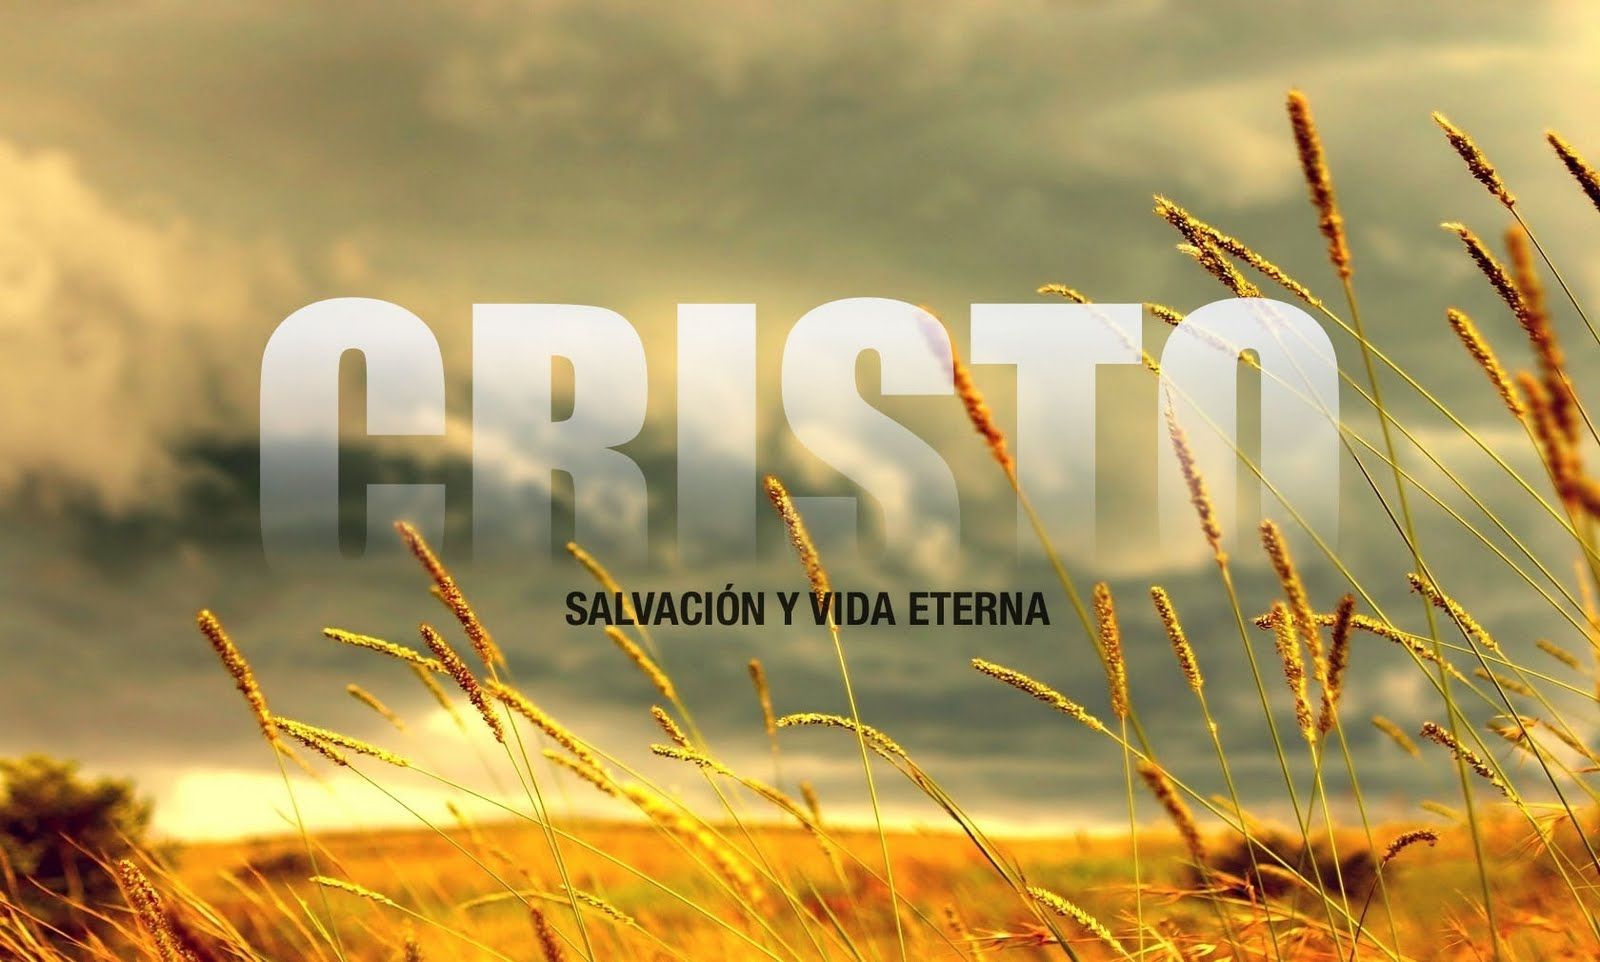 cristo-vida-eterna